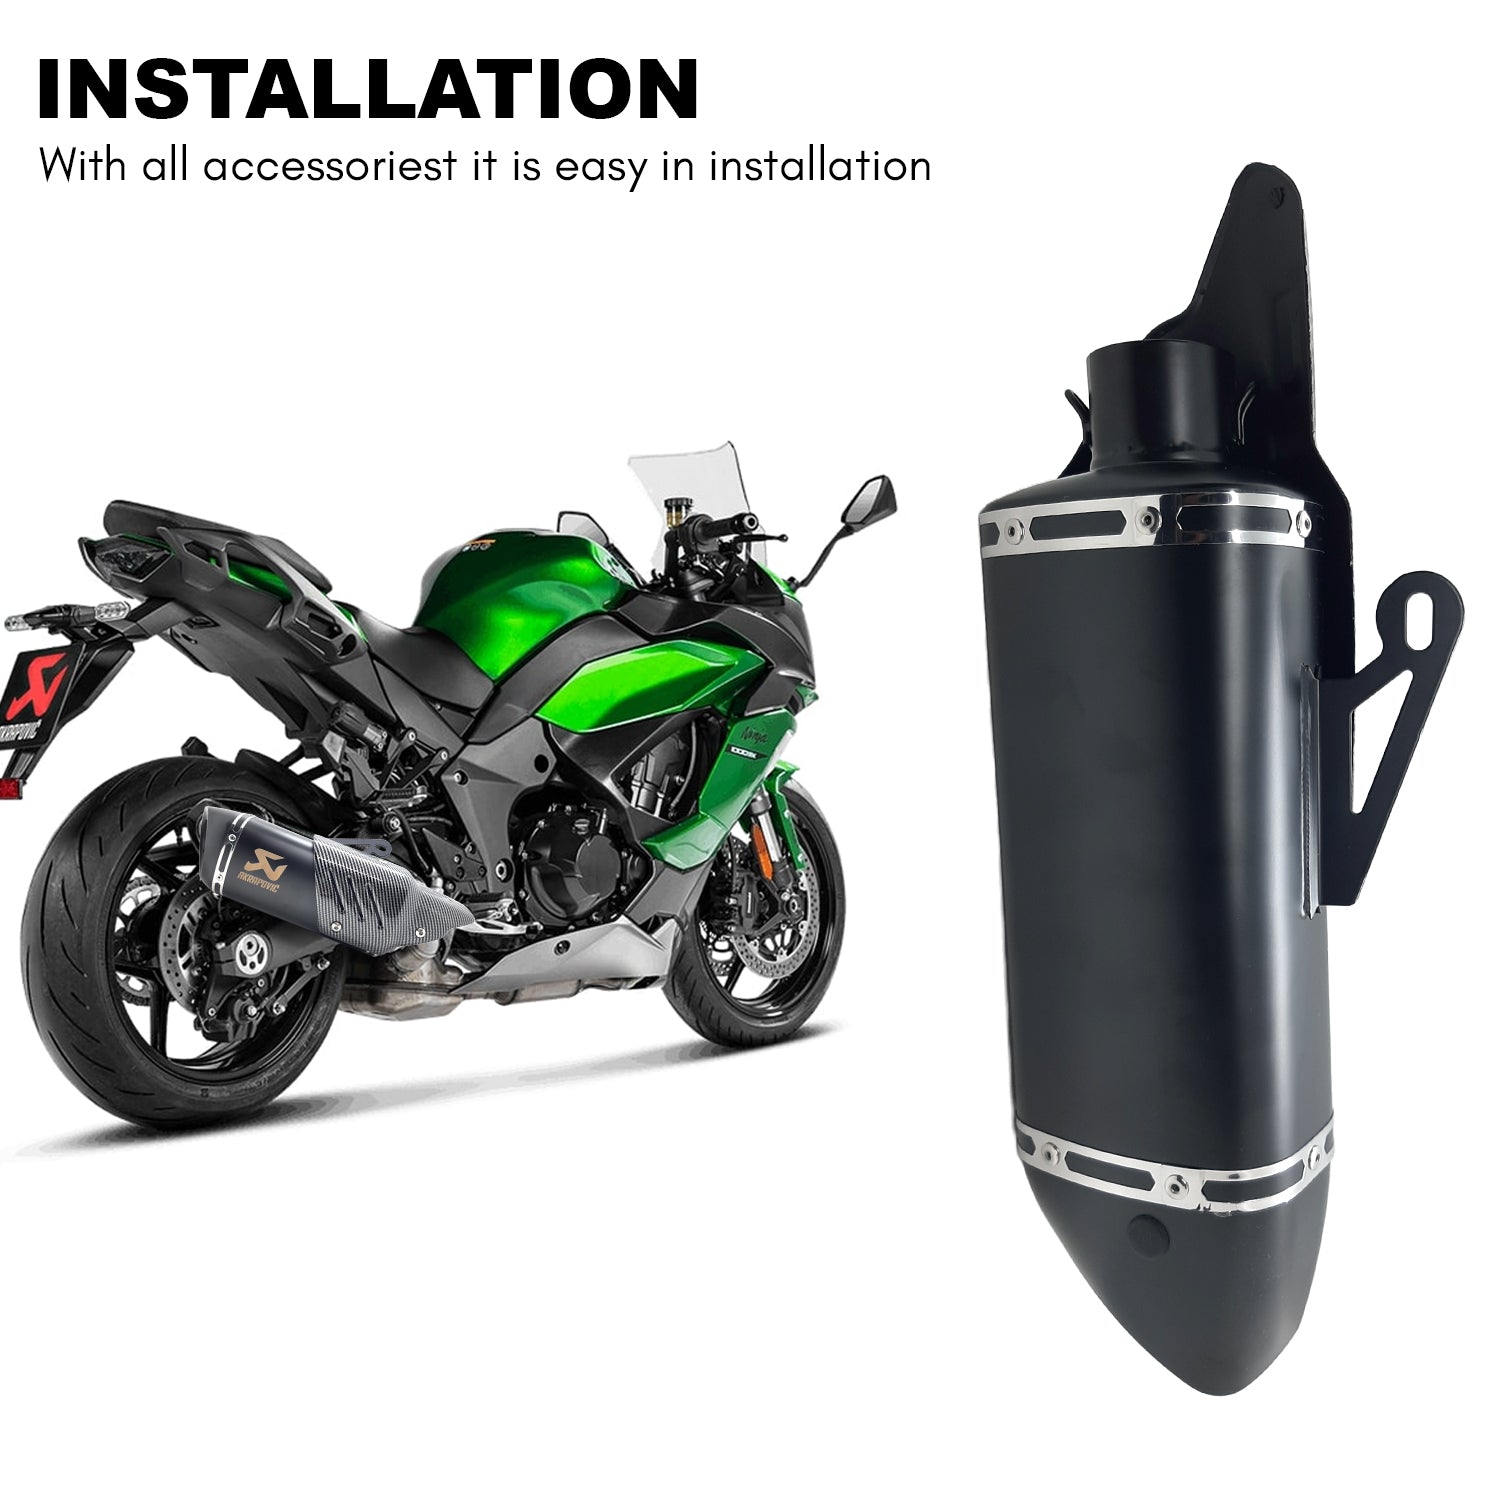 Akrapovic Motorcycle Universal Racing Exhaust for Yamaha R15v3 v2 v1 MT-15 Bajaj KTM Kawasaki Z900 Z800 Ninja (Black)